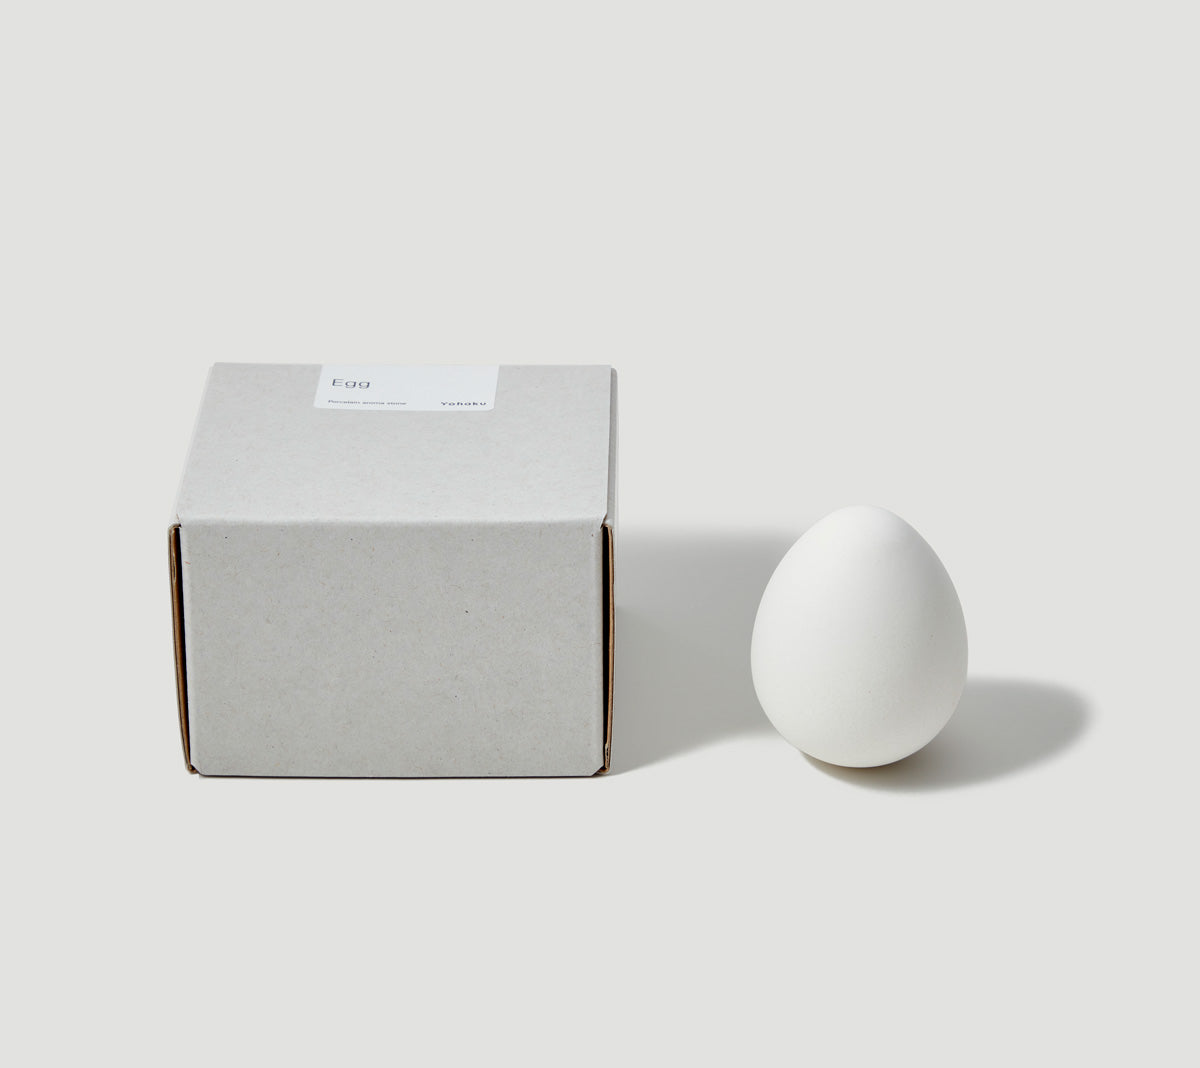 Porcelain aroma stone - Egg